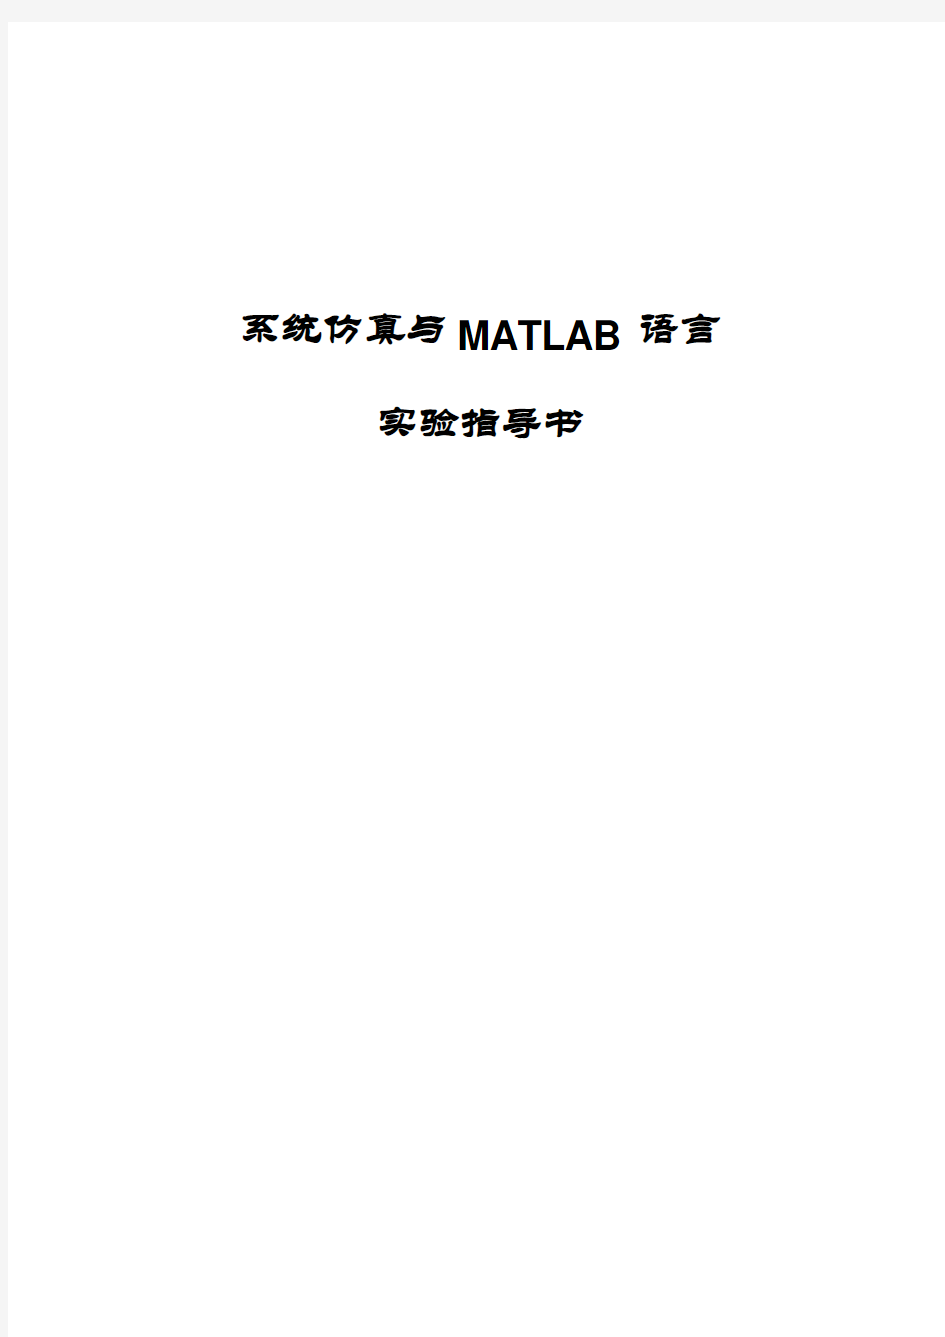 2011级《系统仿真与MATLAB语言》实验指导书